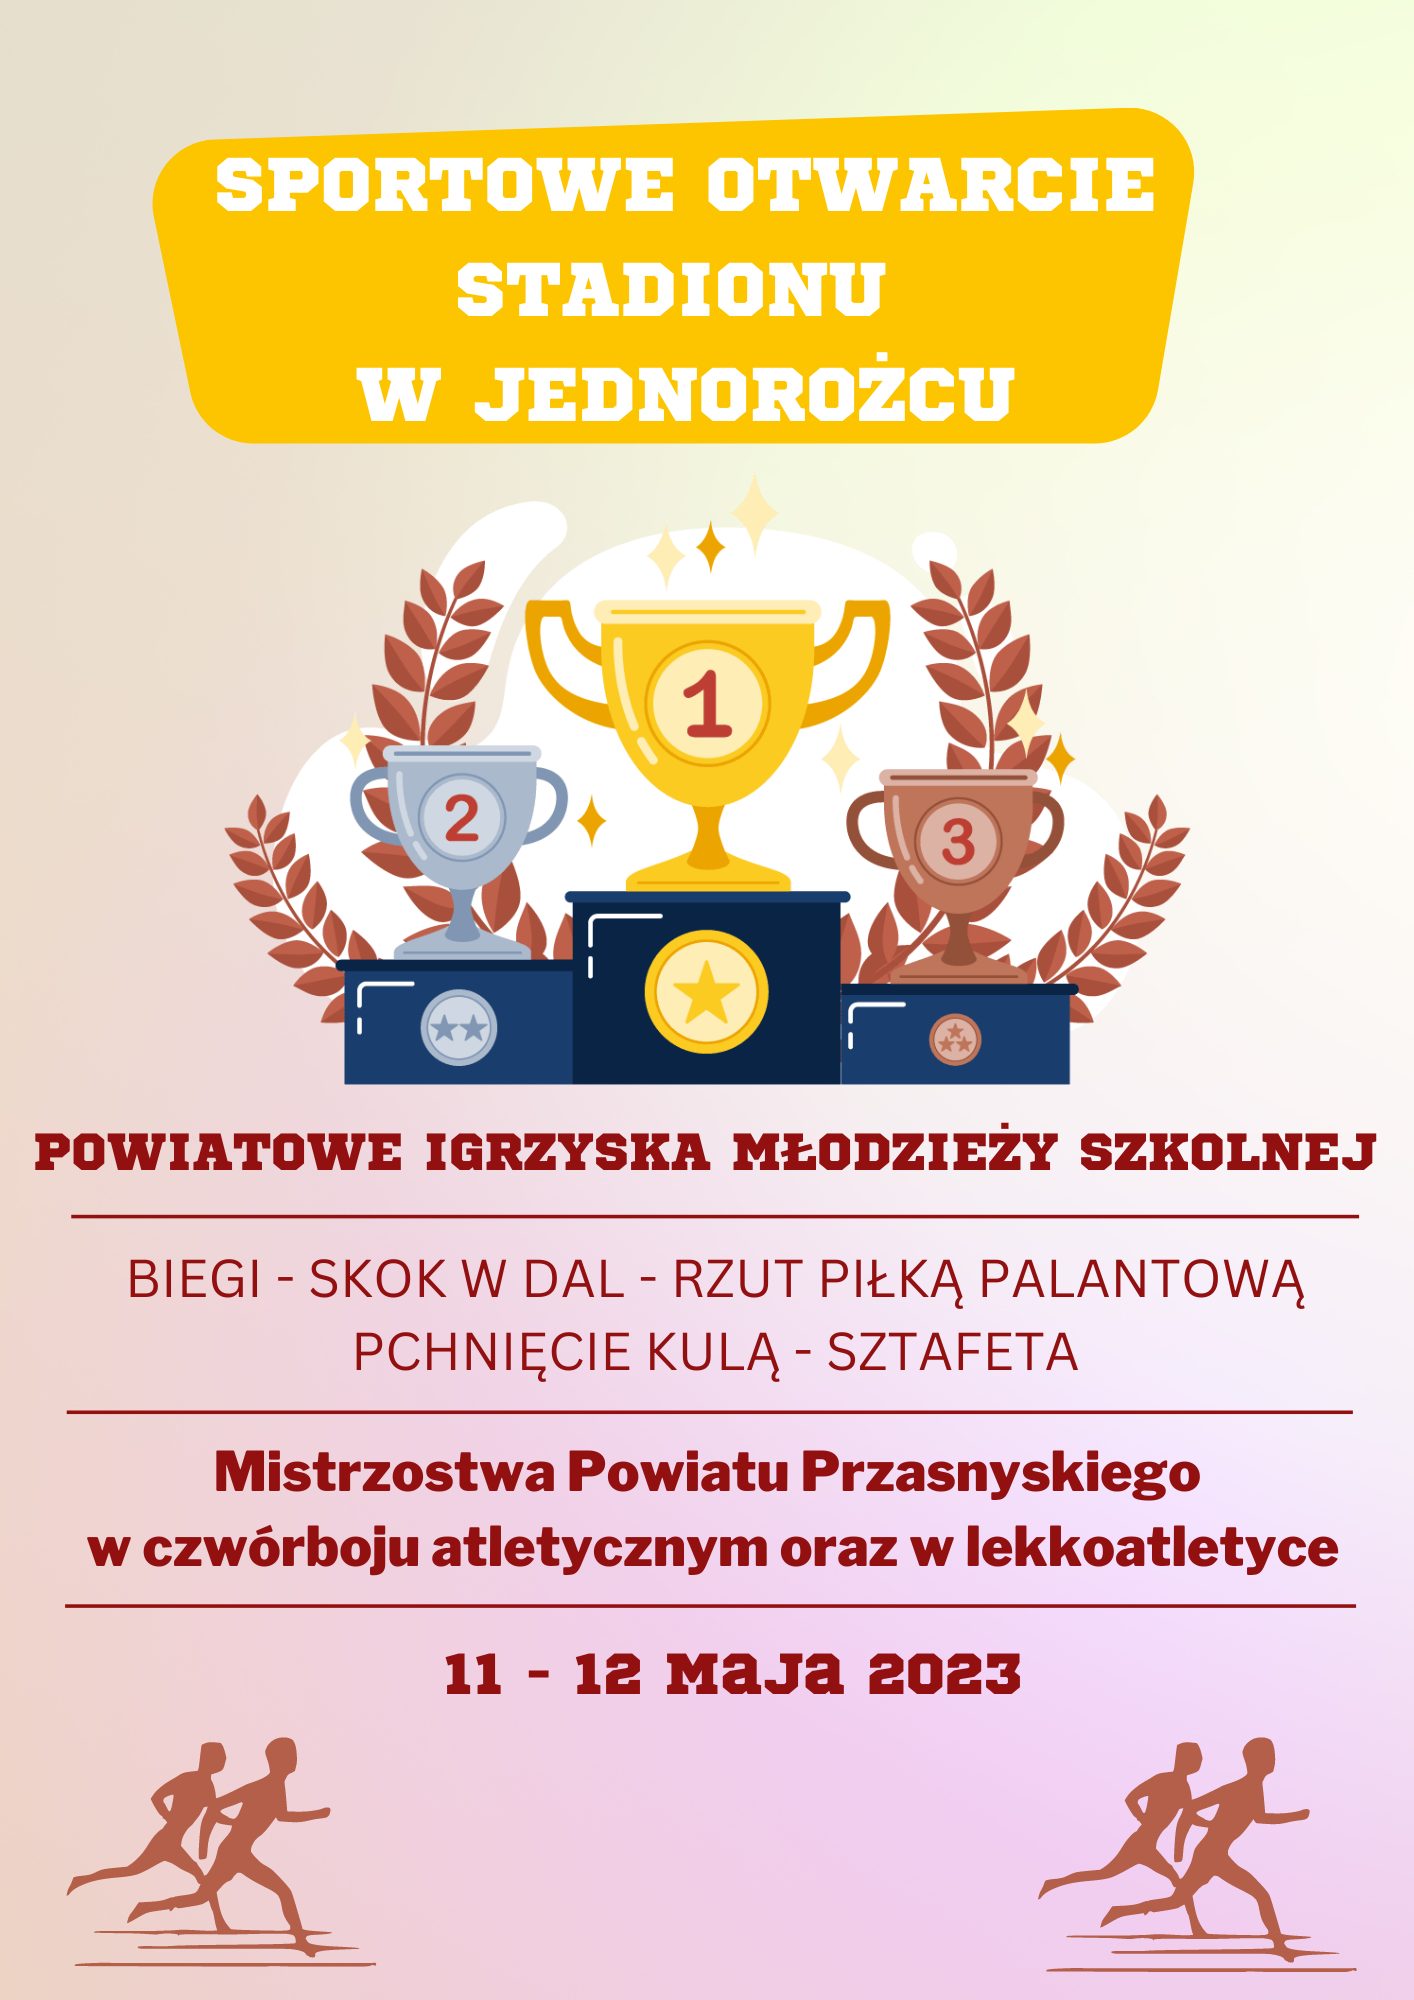 Plakat informujący o sportowym otwarciu stadionu w Jednorożcu. Treść w artykule.